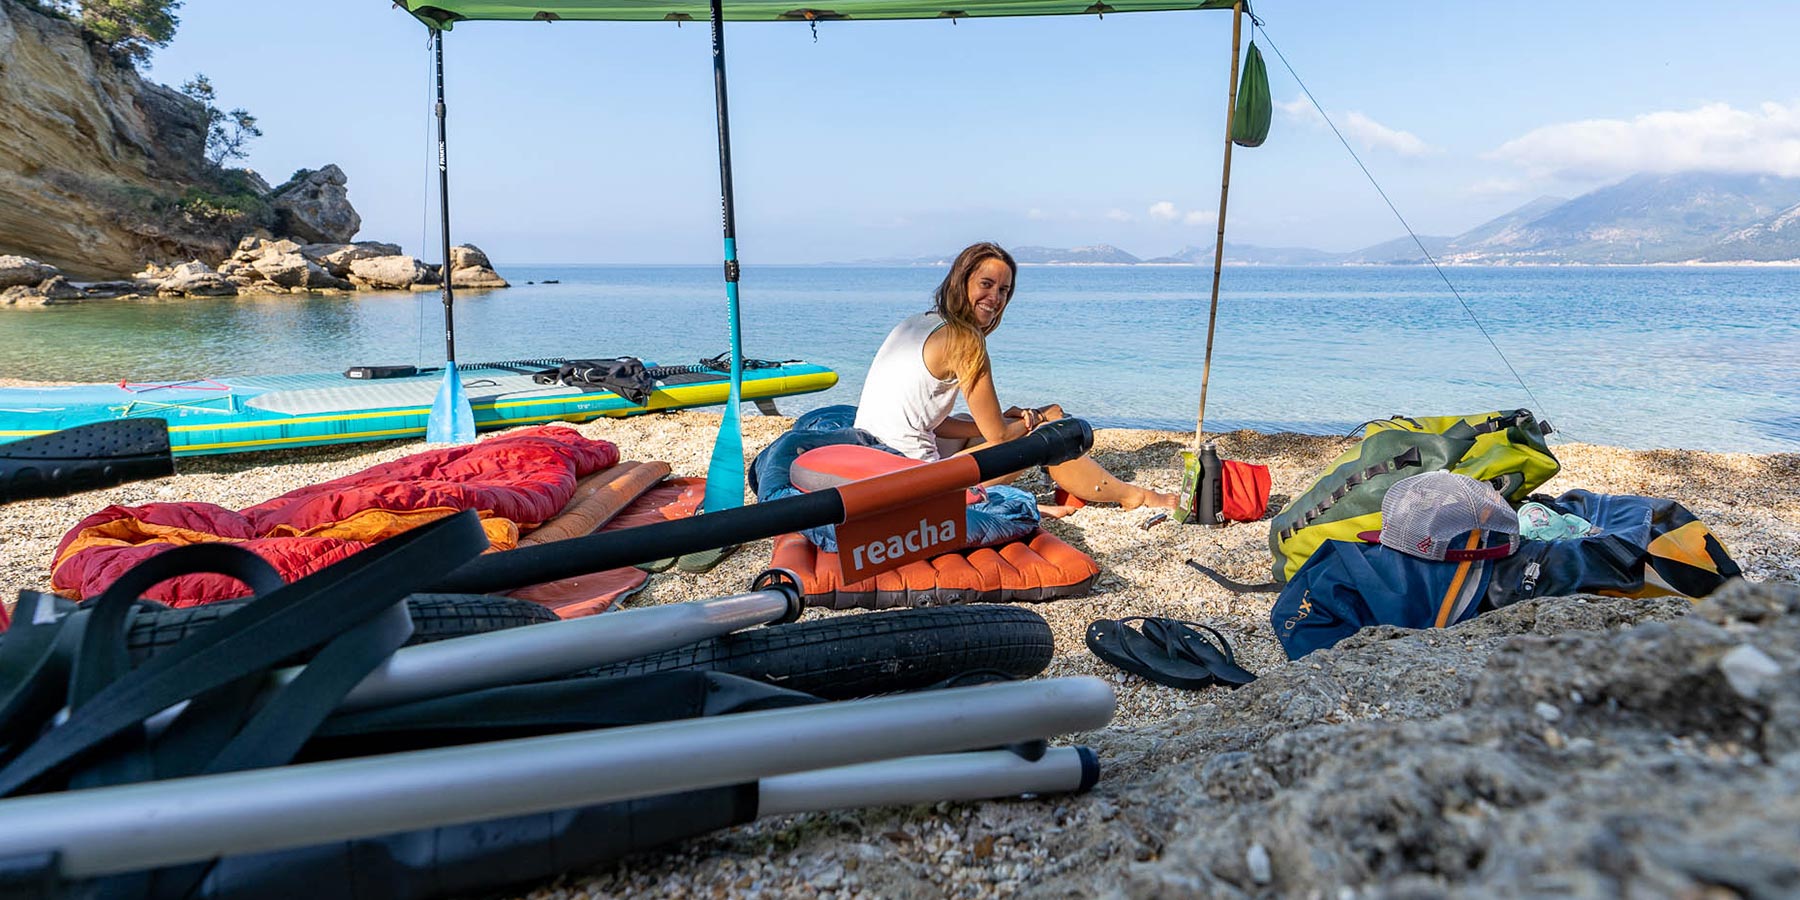 Camping-Fahrradanhänger für Zelte, Ausflüge & mehr